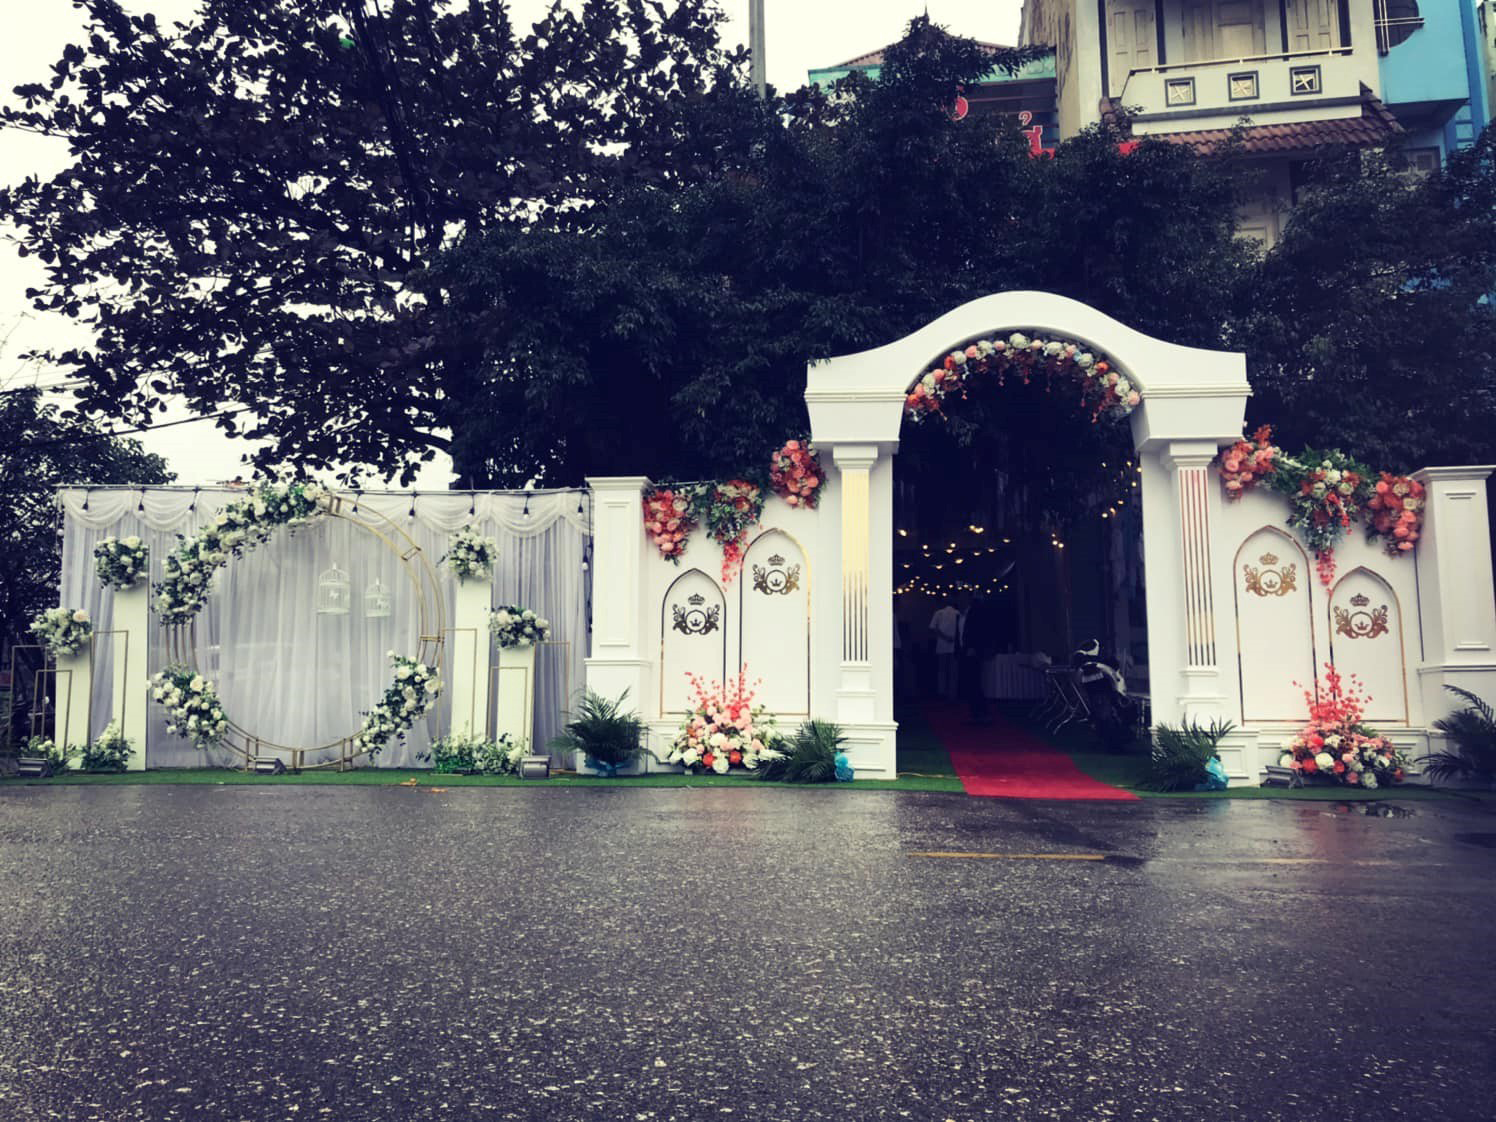 Qui định lễ cưới không quá 30 người, nhiều cặp đôi tại Hà Nội thay đổi kế hoạch “về chung một nhà”